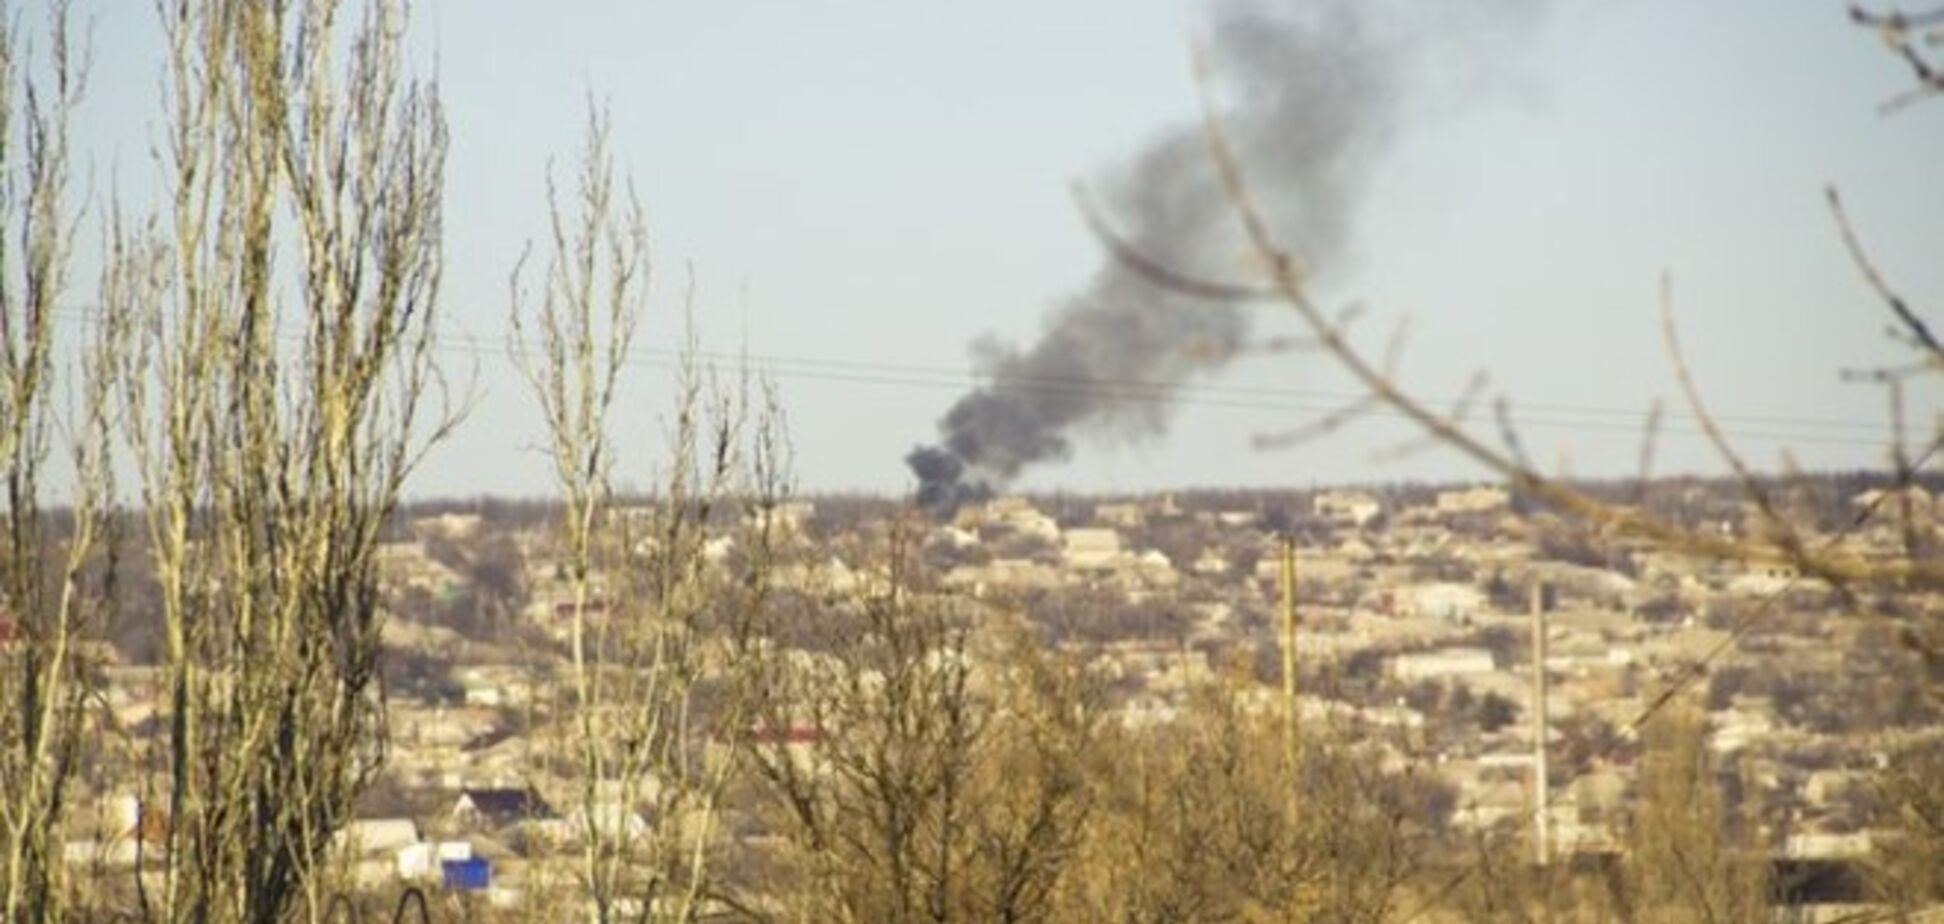 Луганчане сообщили о возобновлении обстрелов в городе: опубликовано фото